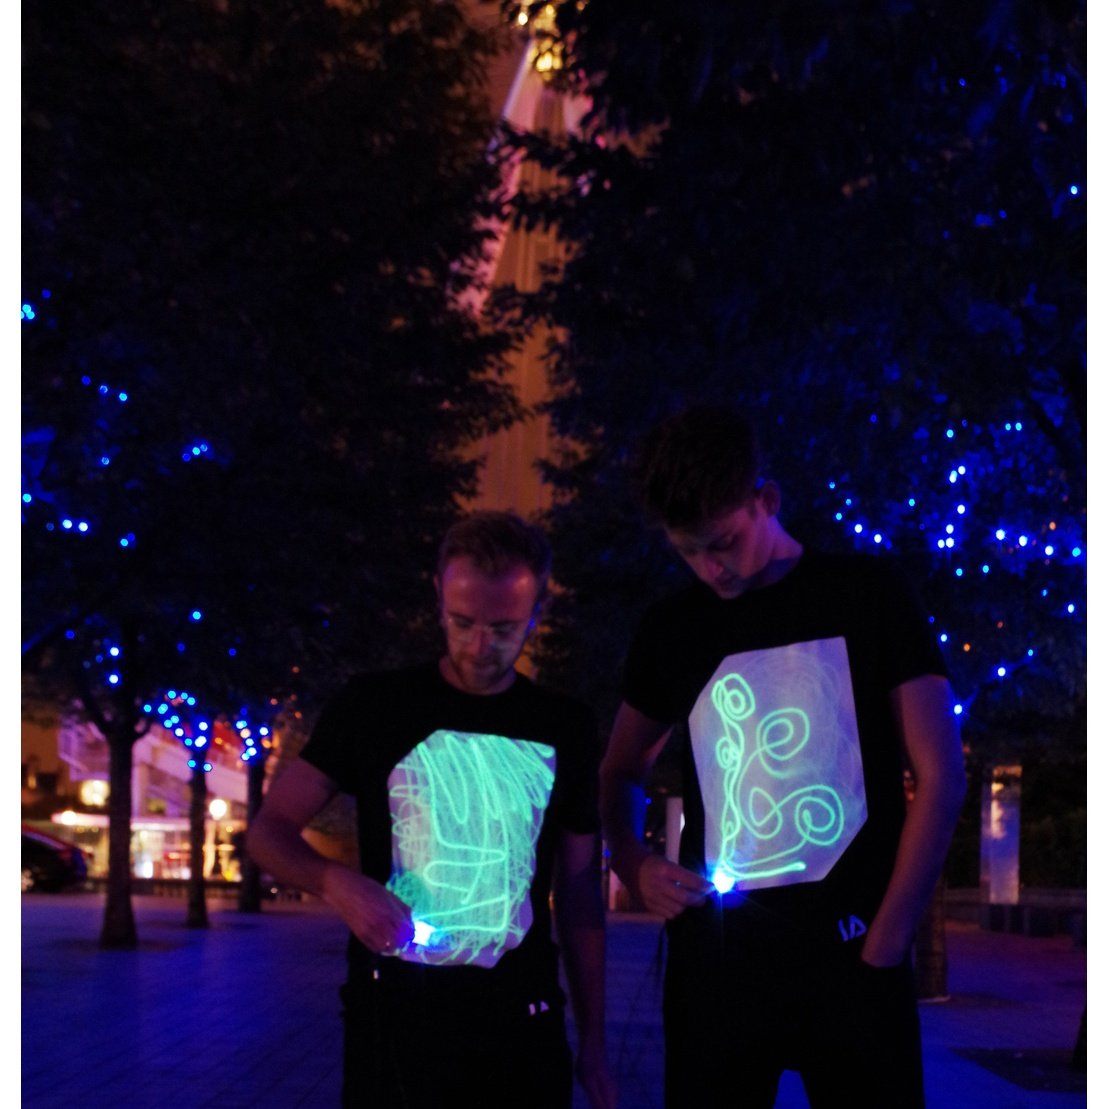 IA Interactief Glow T-shirt Super Groen - Zwart S